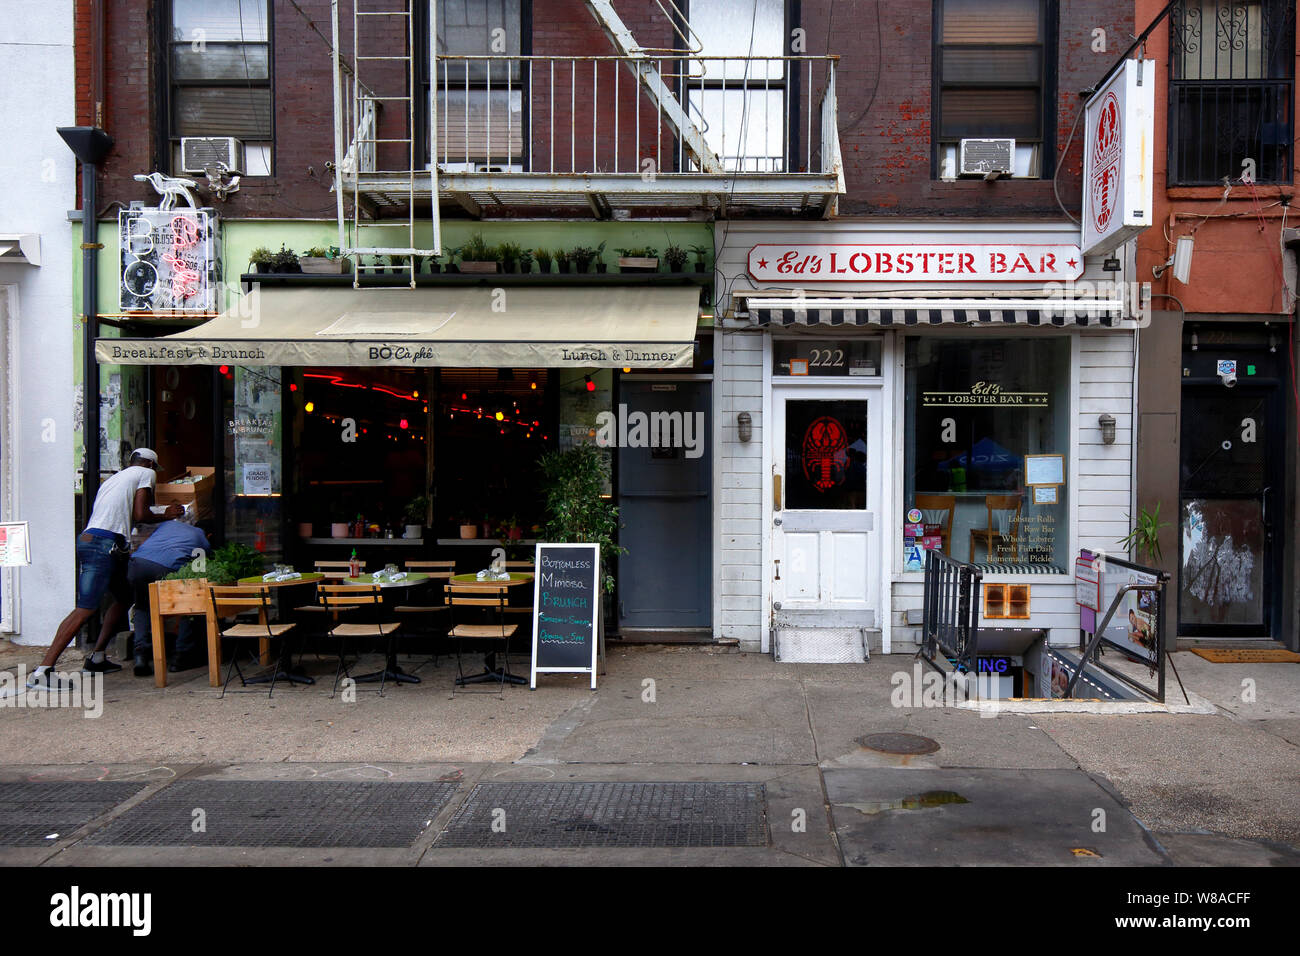 [historical storefront] BoCaphe, Ed's Lobster Bar, 222 Lafayette Street, New York, NYC storefront of restaurants in Manhattan's SoHo. Stock Photo